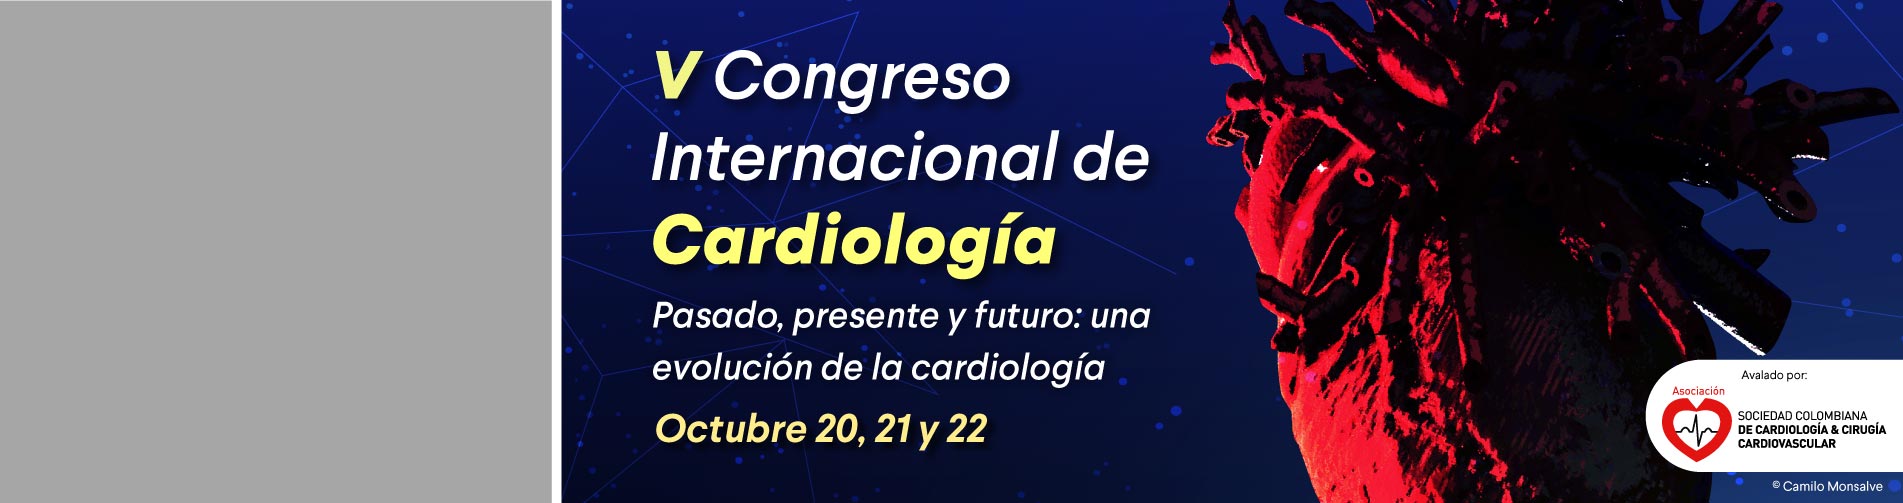 banner Congreso Internacional de Cardiología